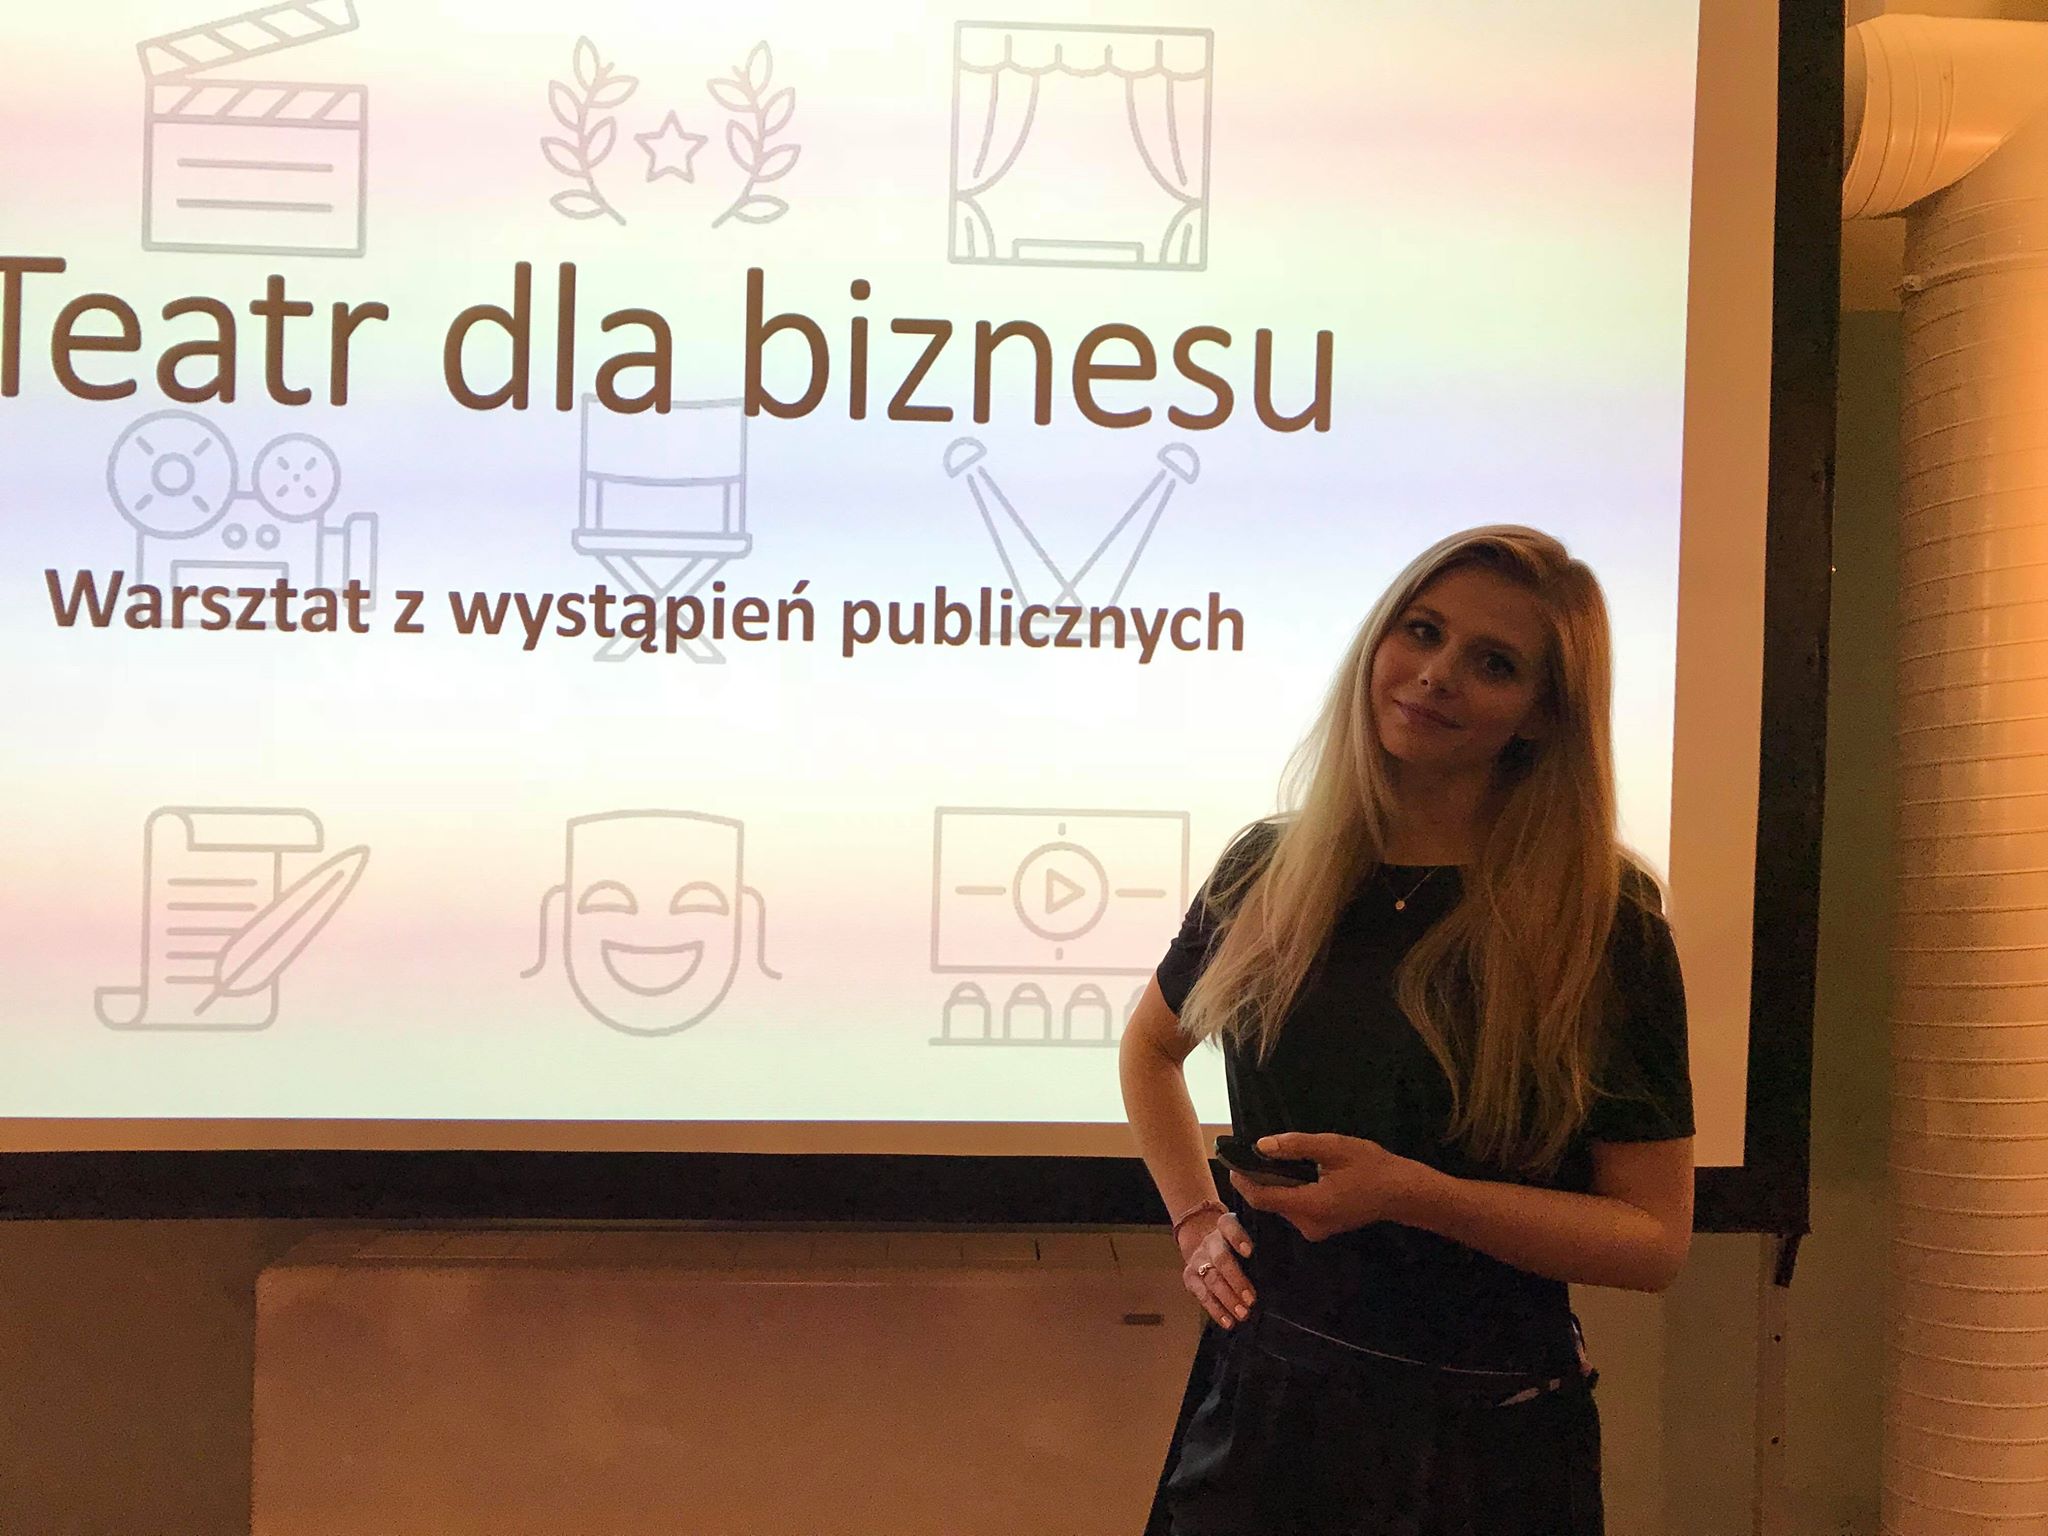 BlogStar: Izabela Zwierzyńska: Wystąpienia publiczne - BlogStar.pl